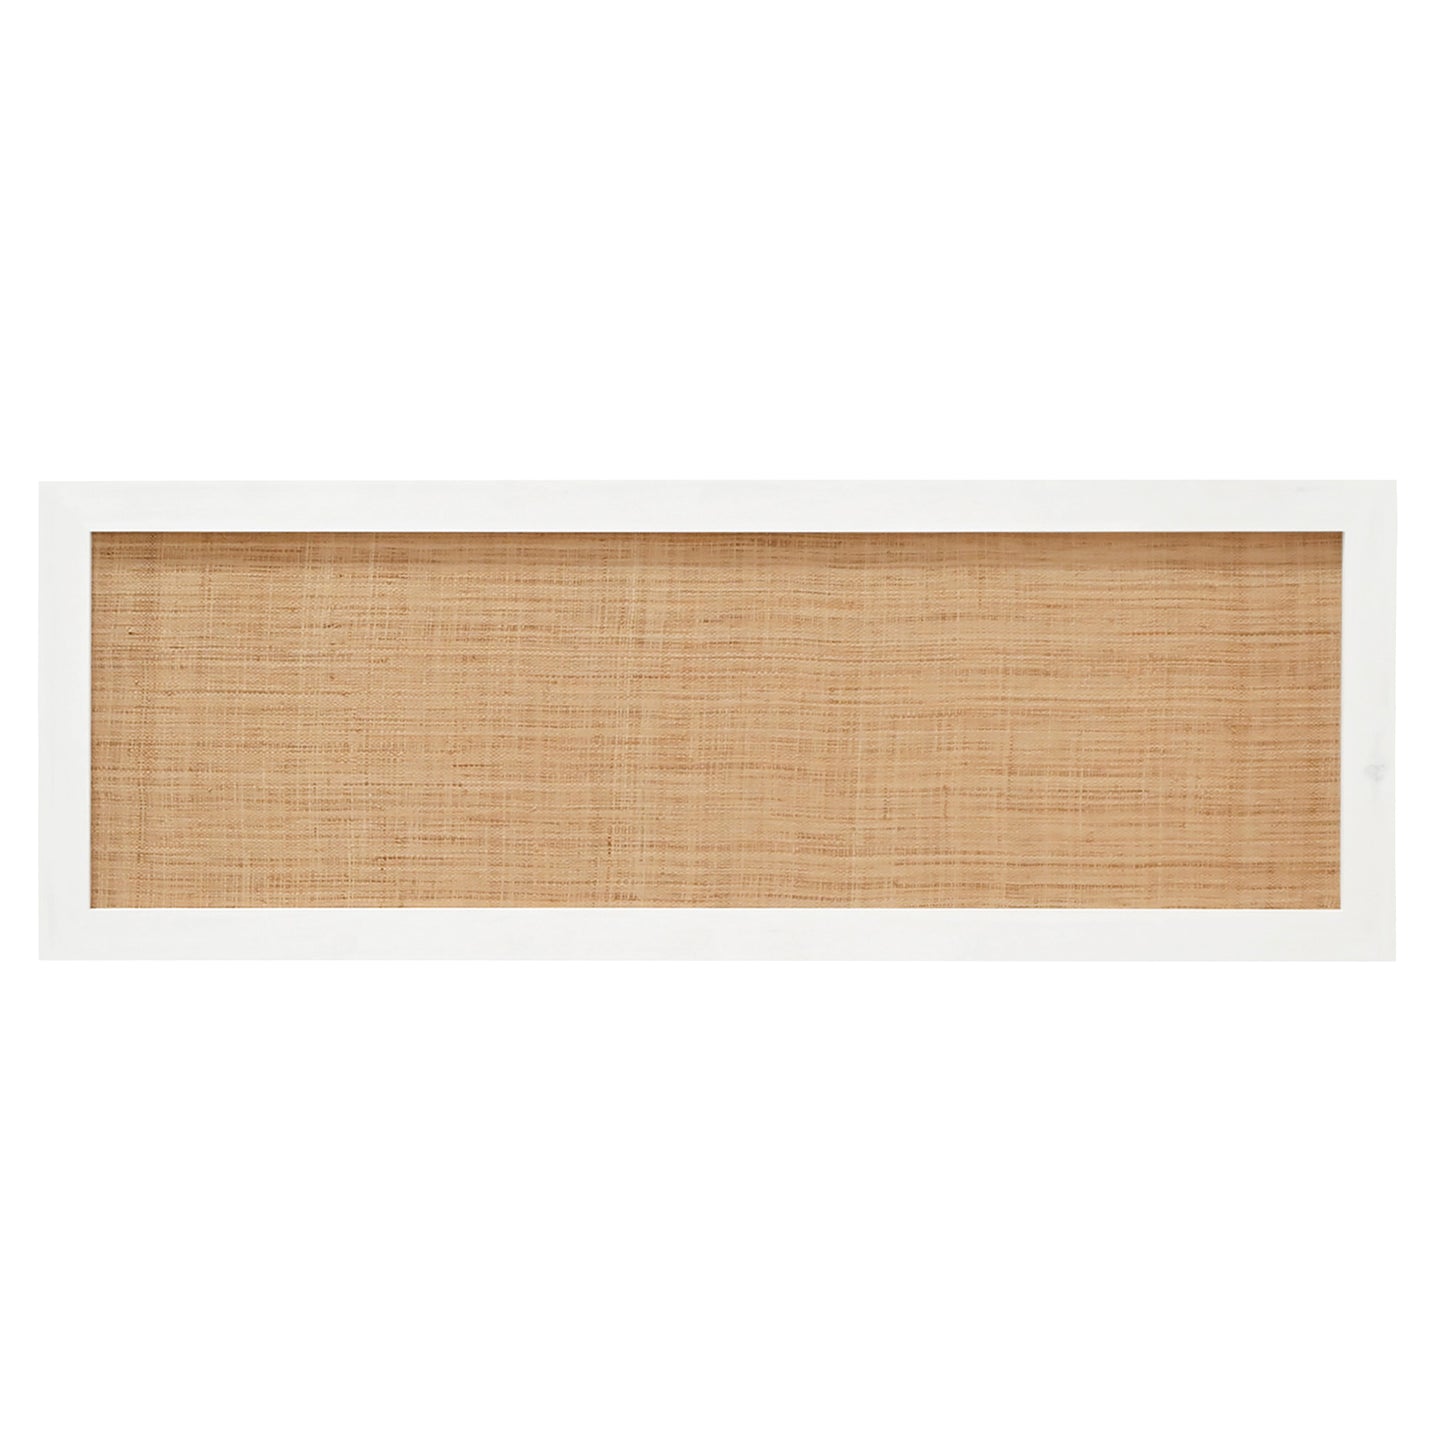 Cabecero de madera maciza y rafia en tono blanco de 200x60cm - DECOWOOD